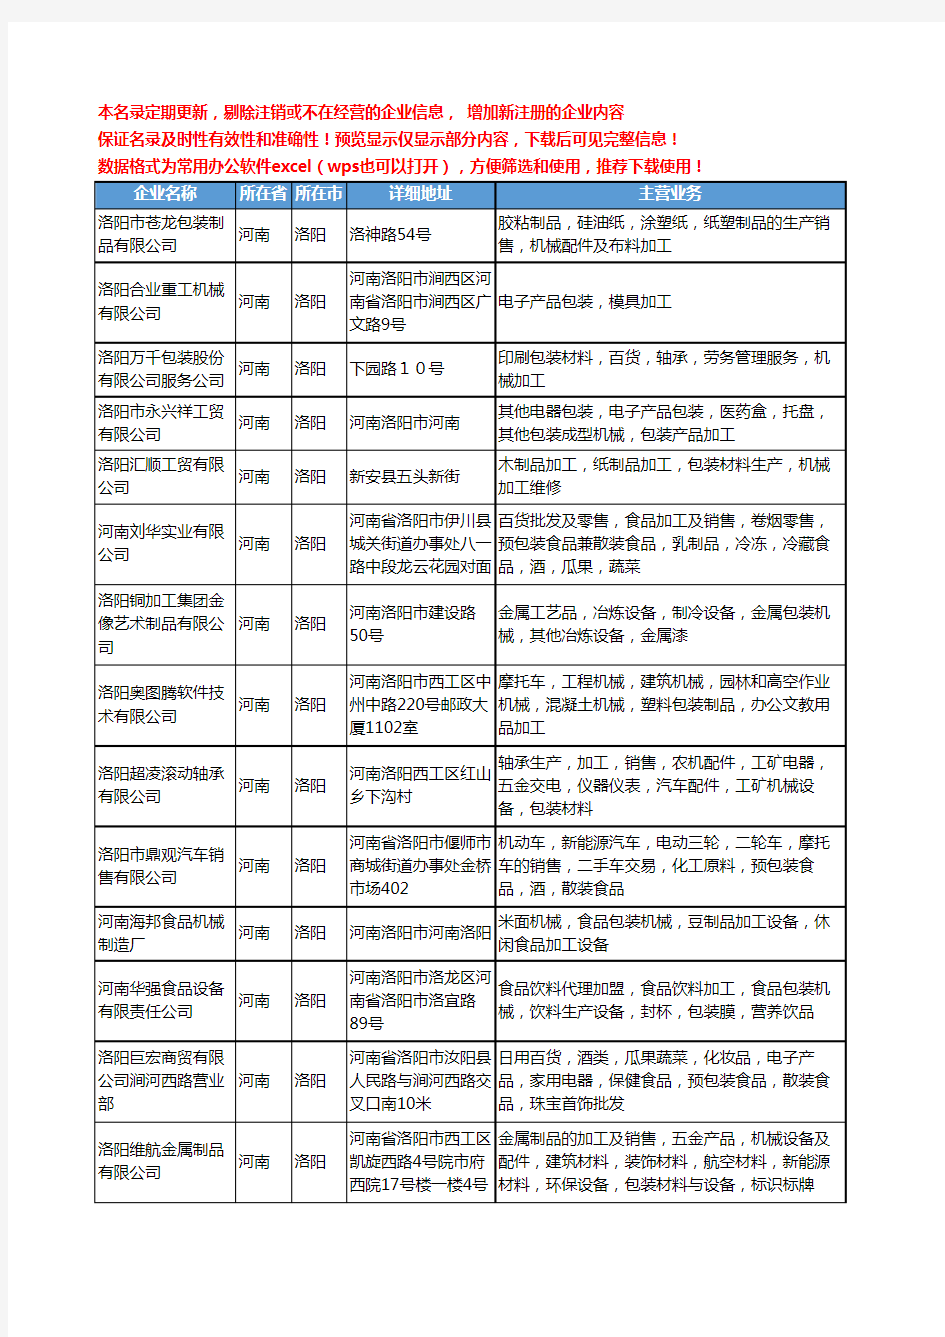 新版河南省包装机械加工工商企业公司商家名录名单联系方式大全55家